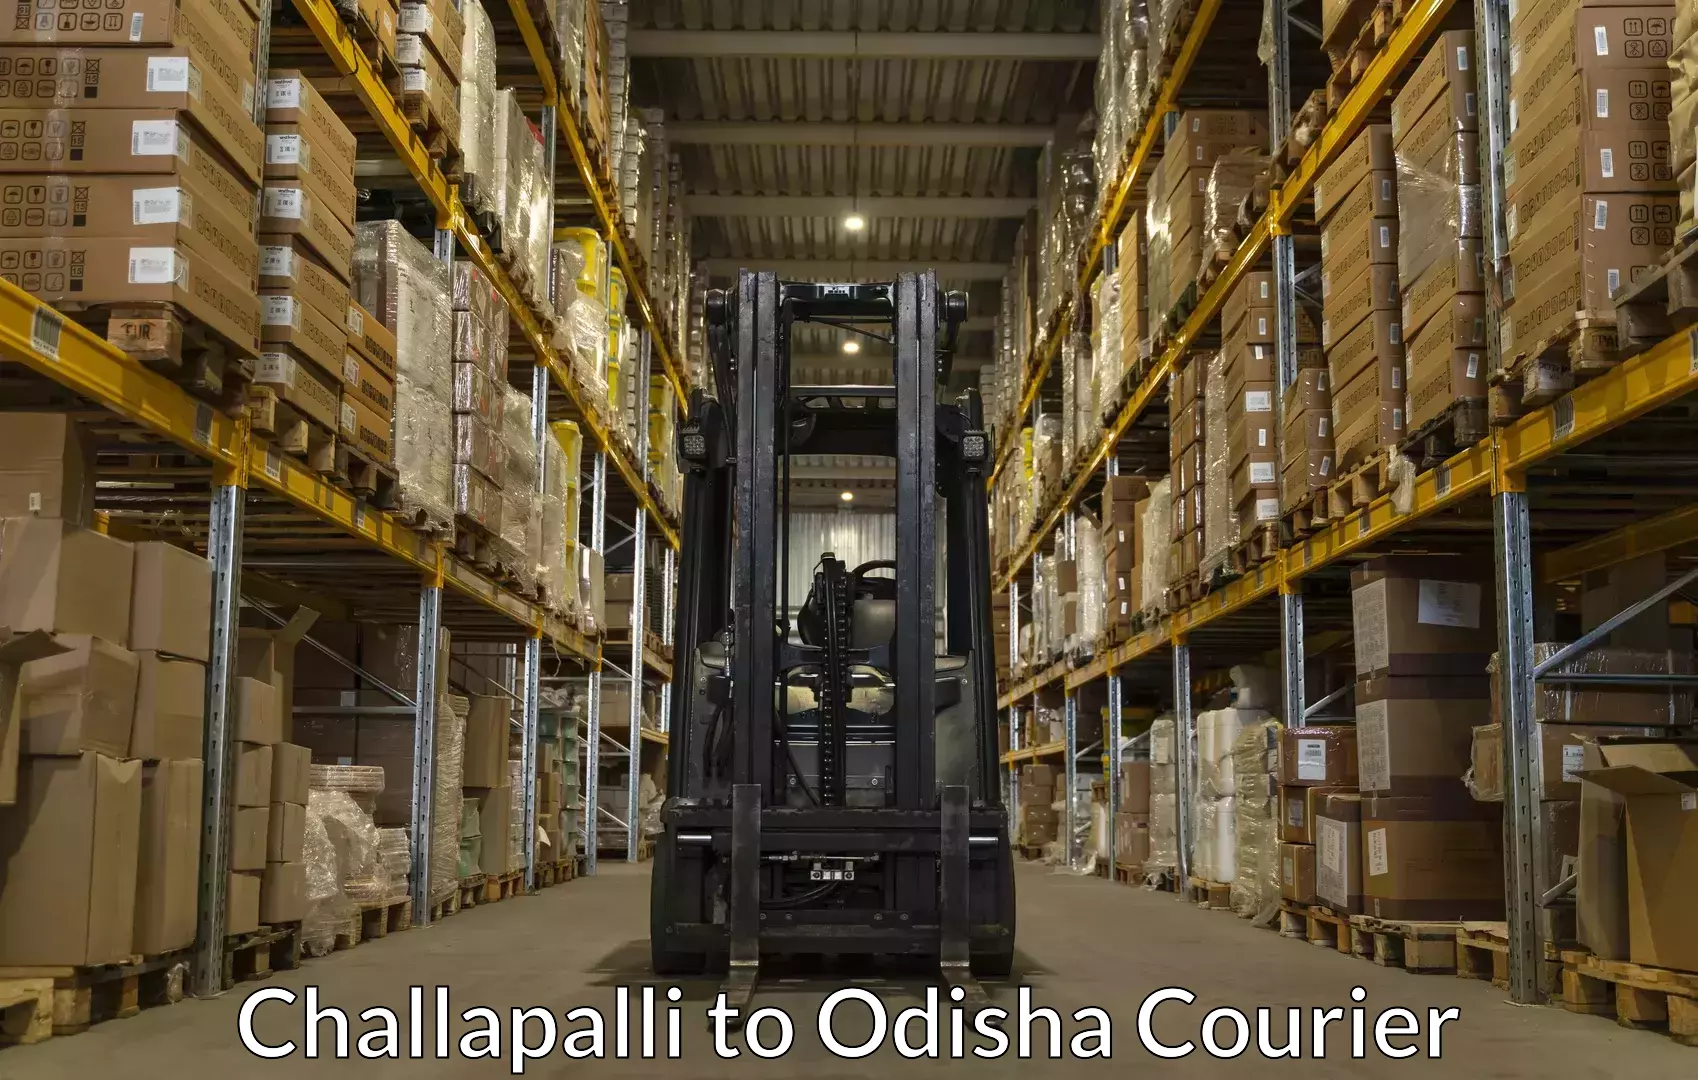 Furniture delivery service Challapalli to Muniguda